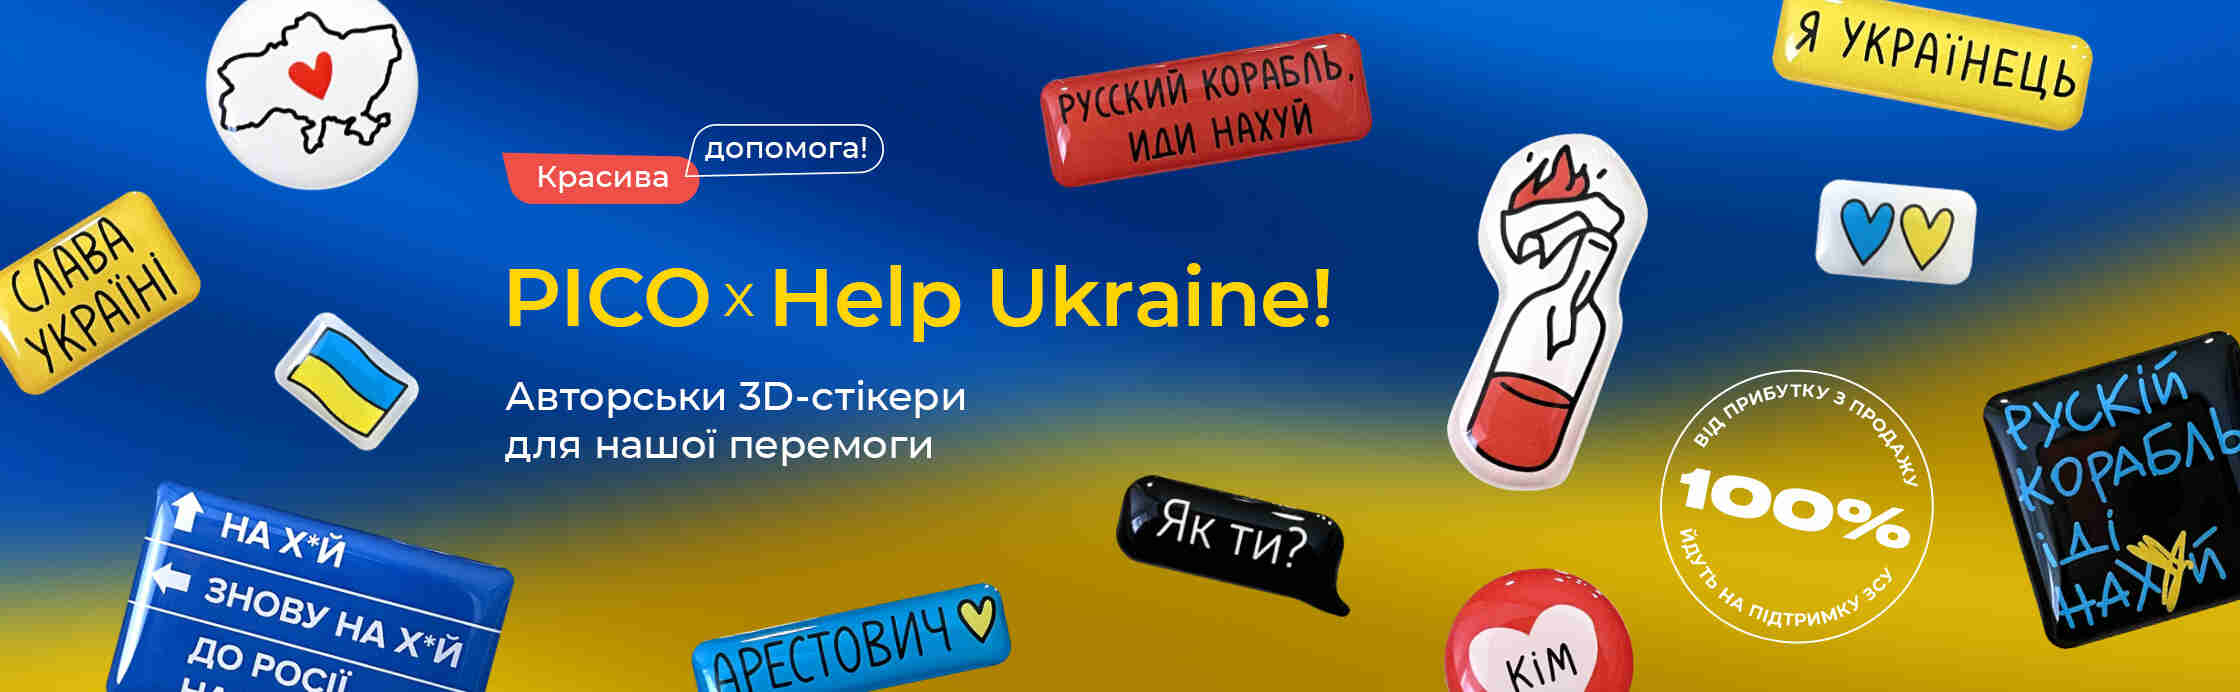 PICO x Help Ukraine!